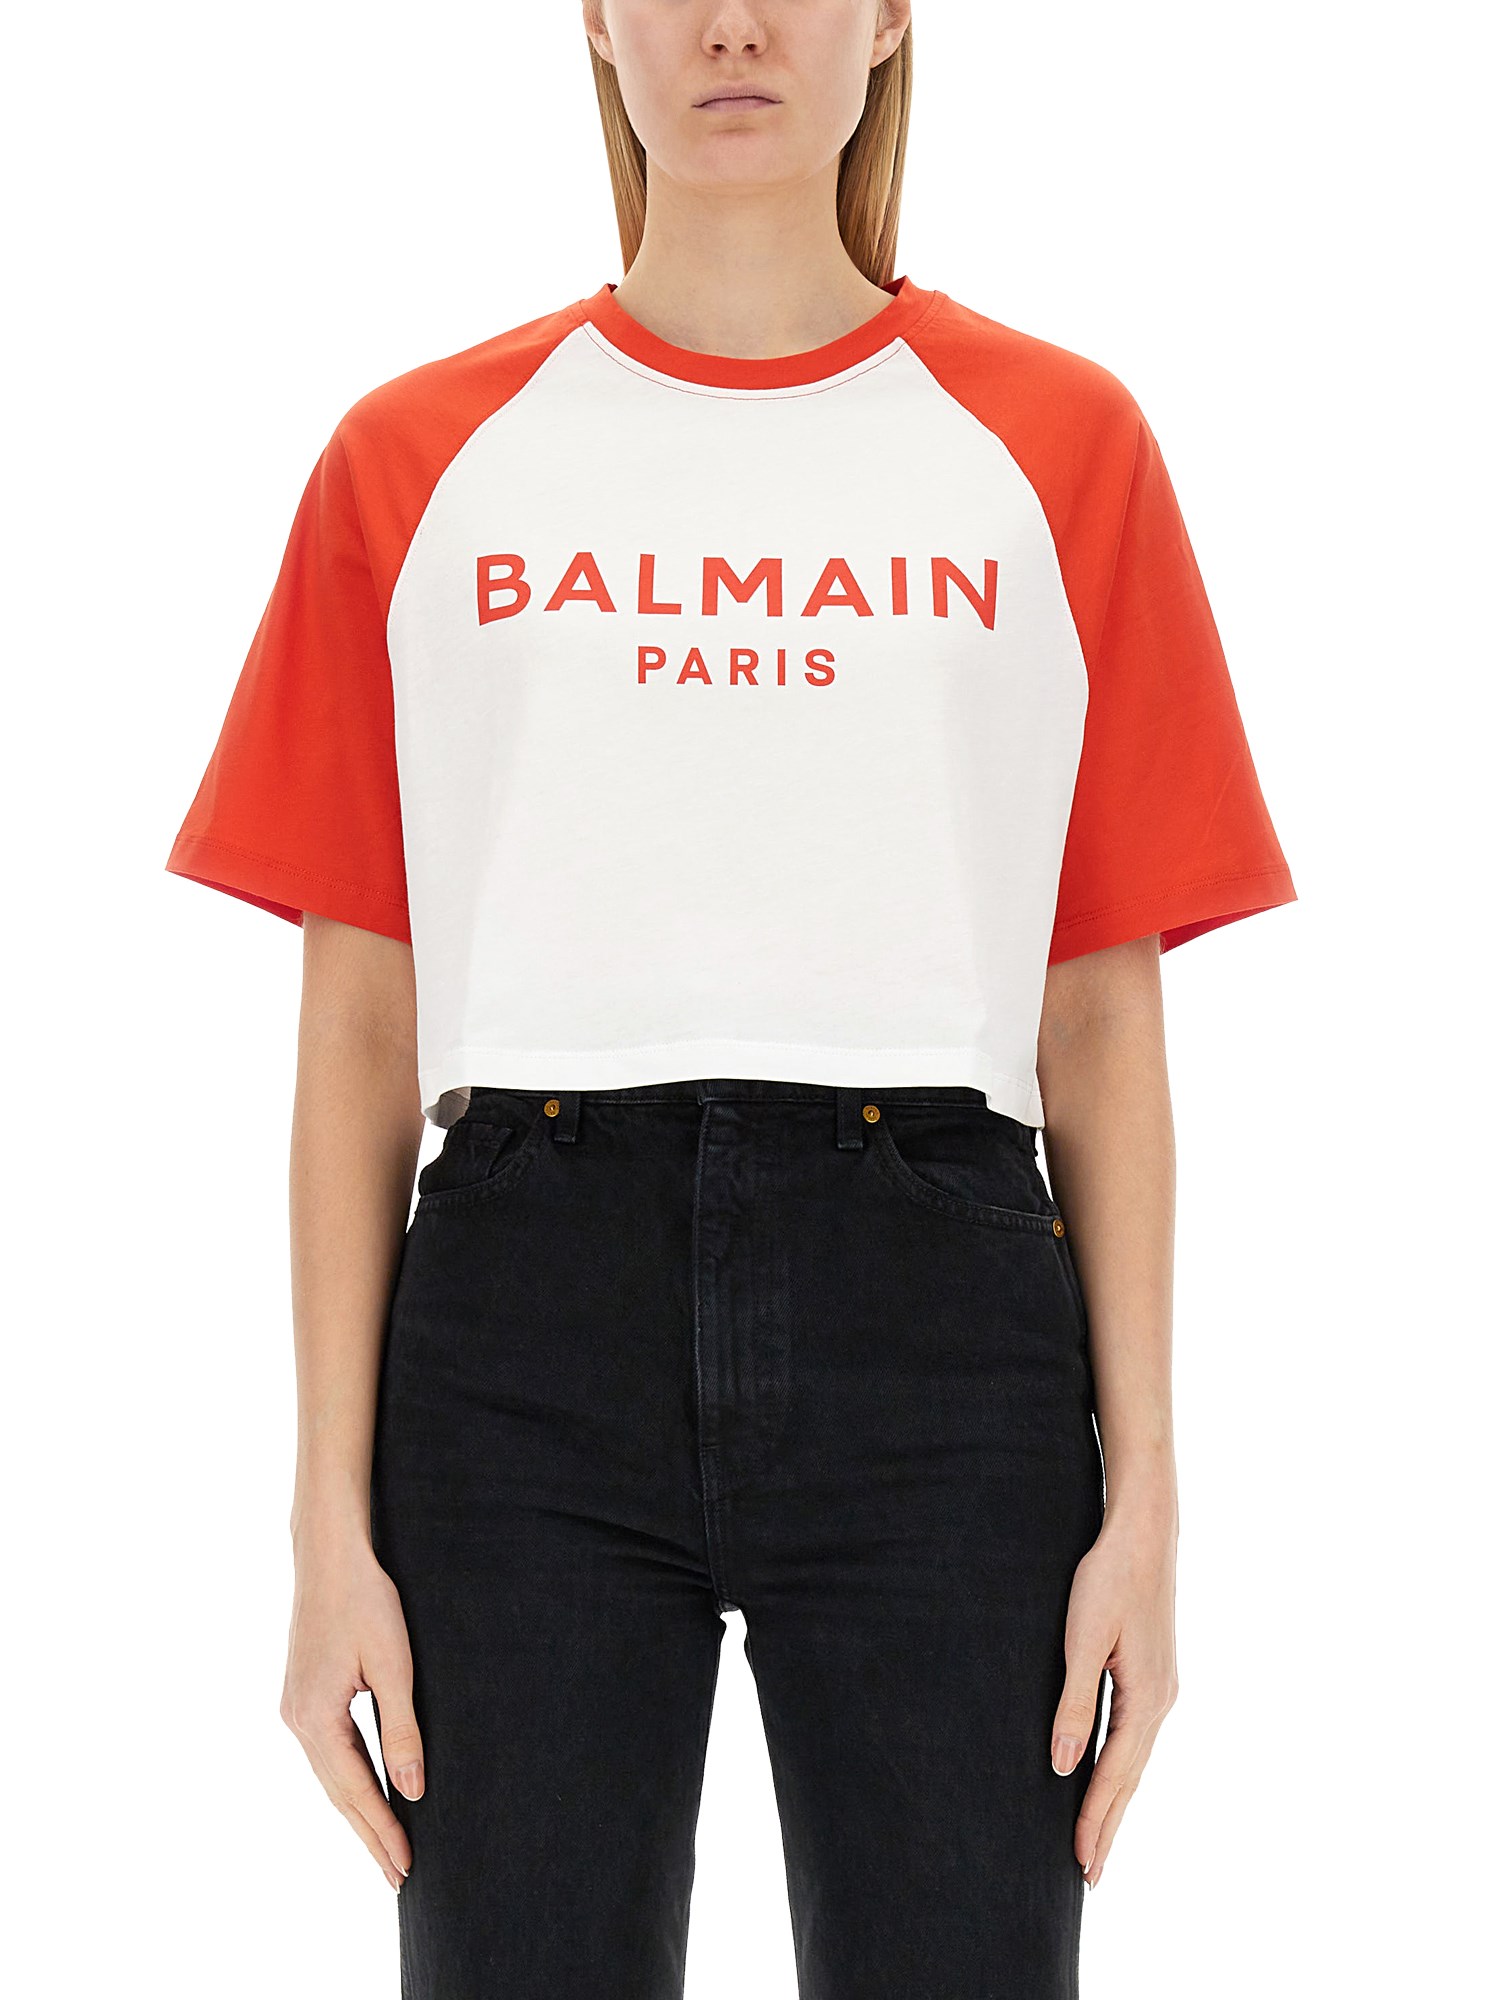 balmain cropped t-shirt